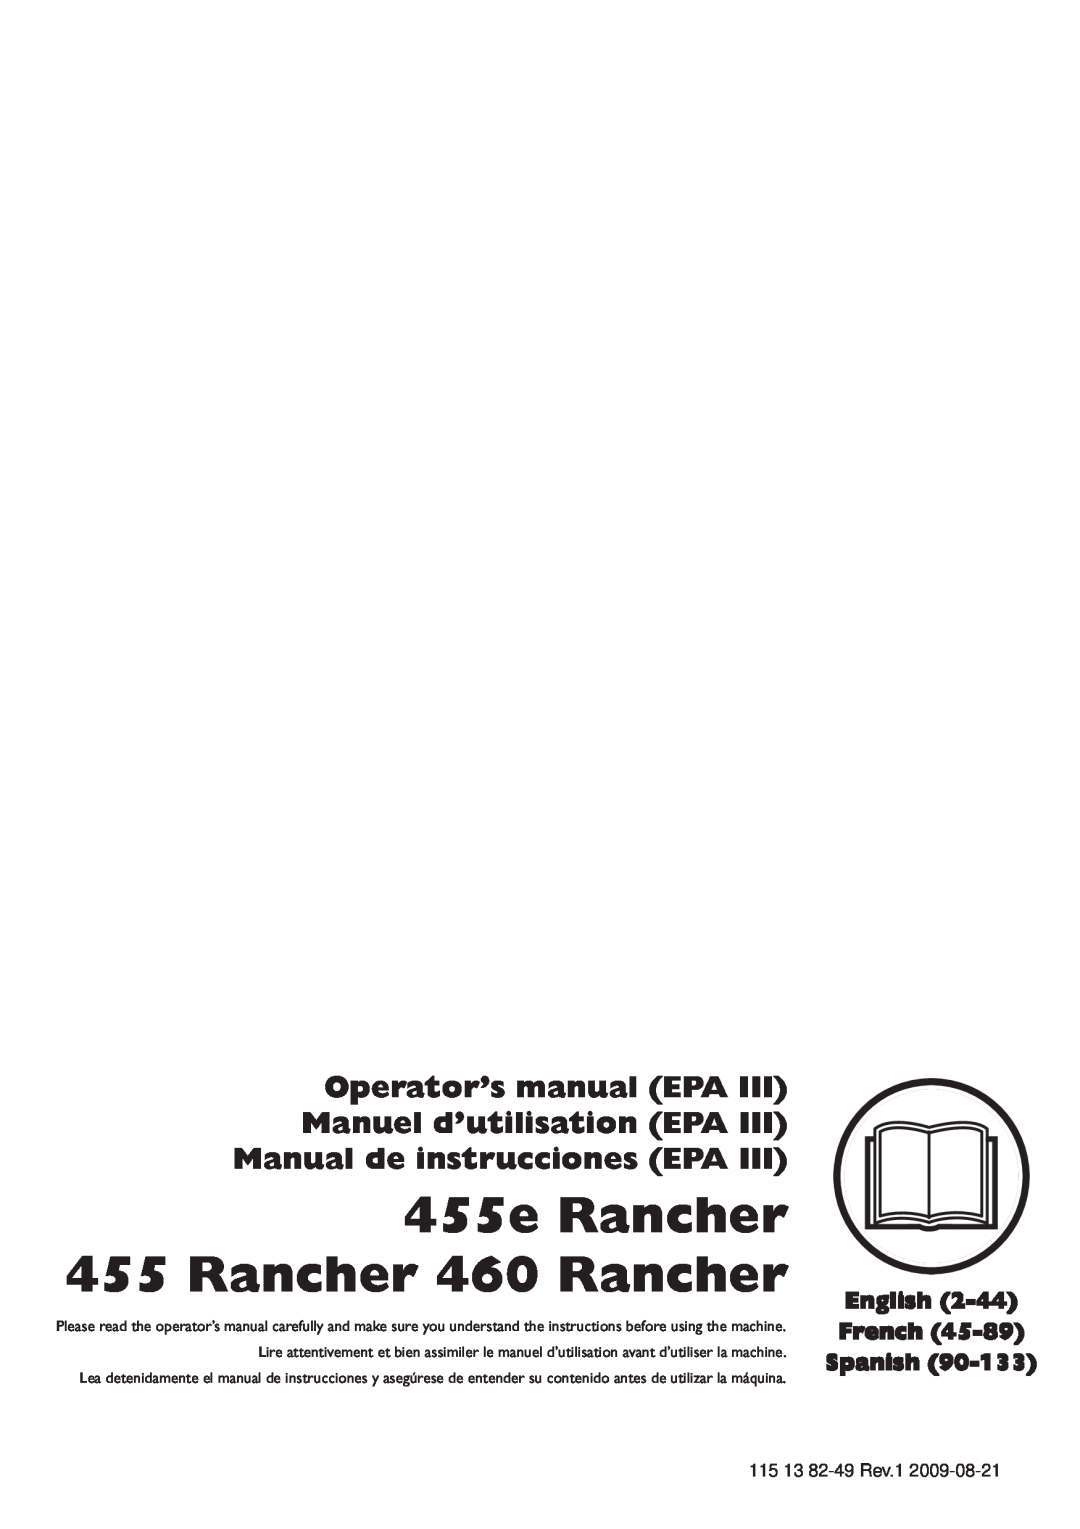 Husqvarna 115 13 82-49 manuel dutilisation 455e Rancher 455 Rancher 460 Rancher, Manual de instrucciones EPA 